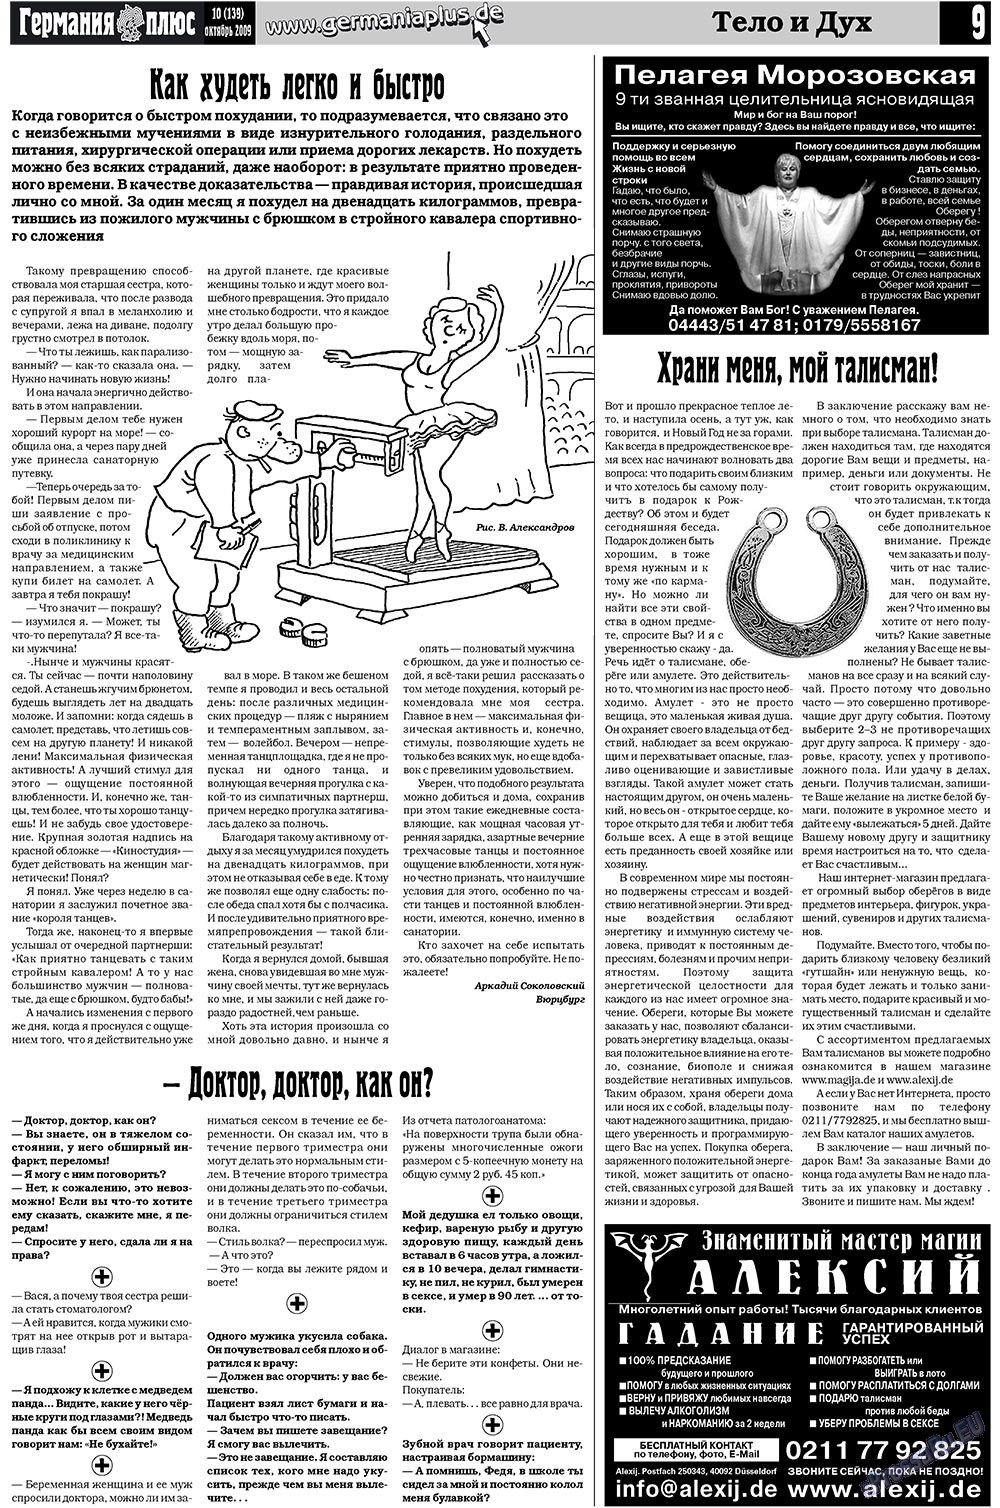 Германия плюс (газета). 2009 год, номер 10, стр. 9